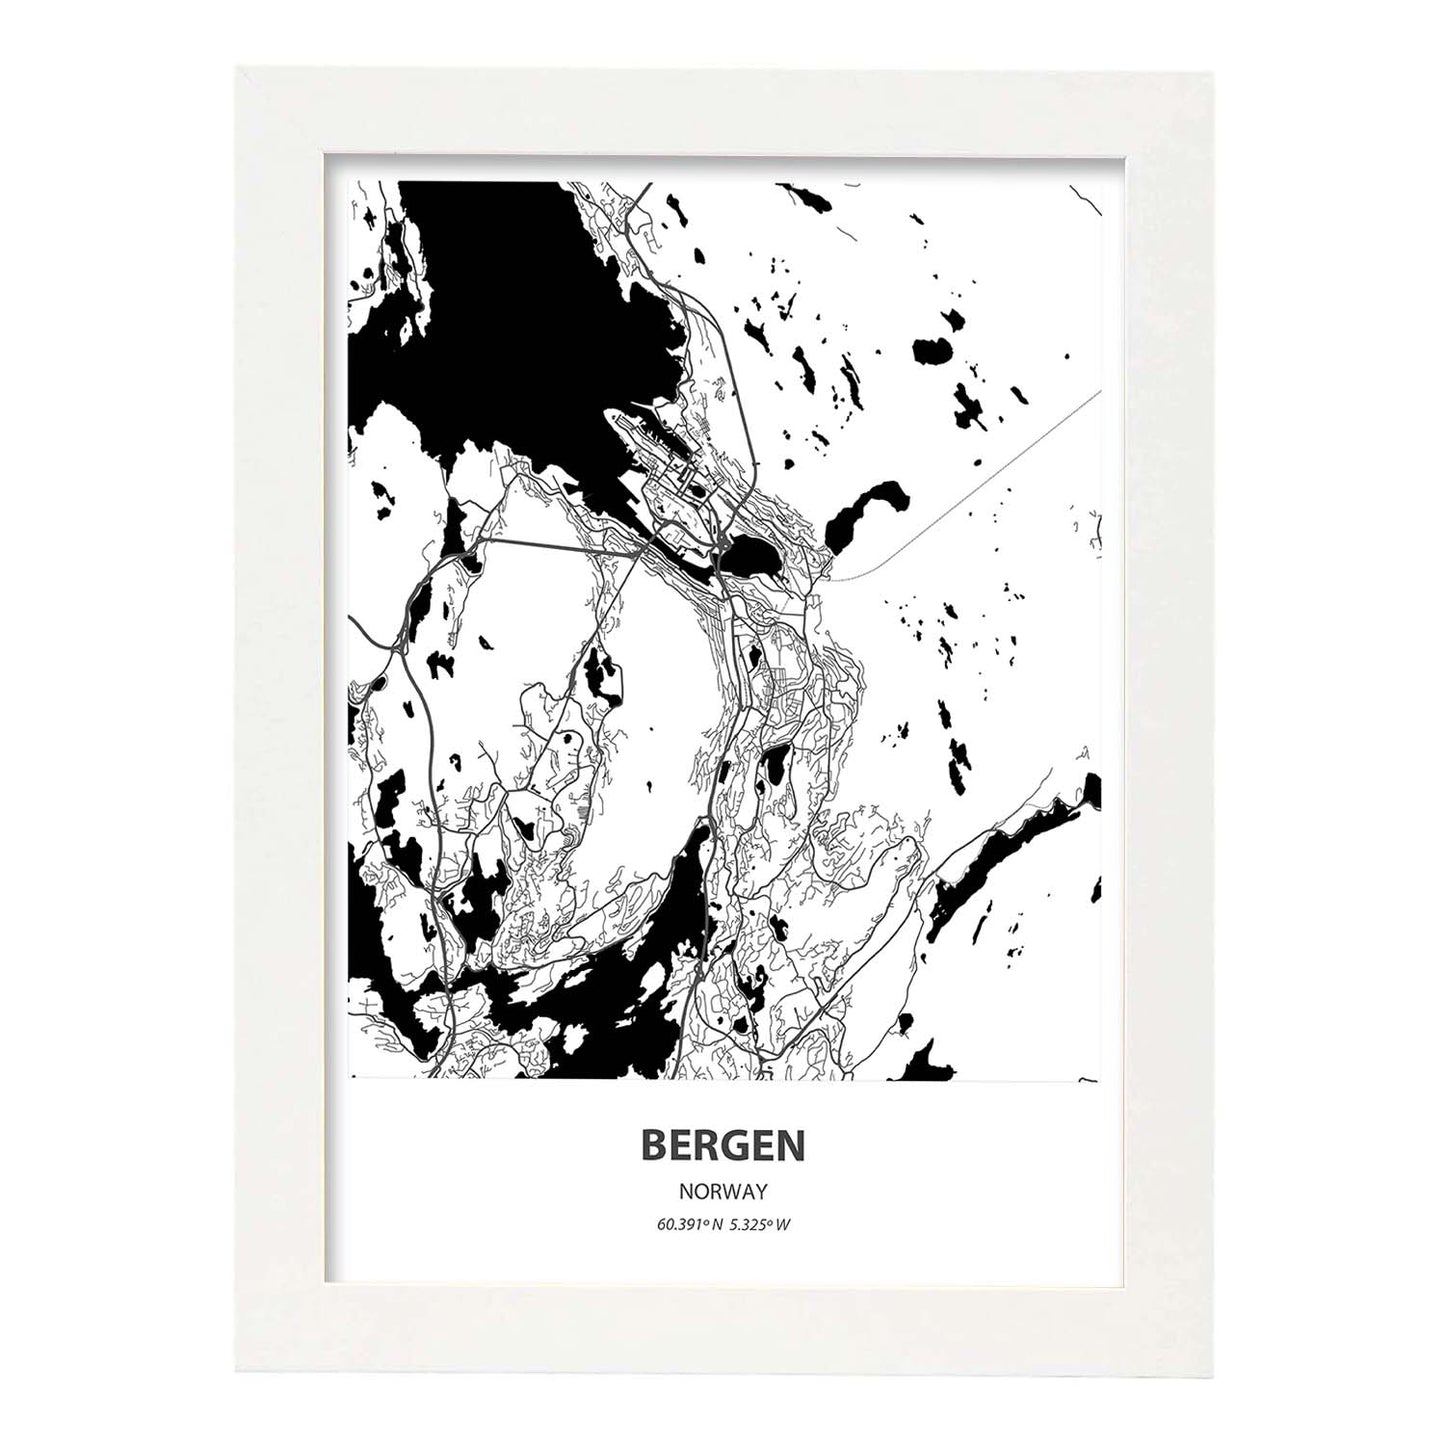 Poster con mapa de Bergen - Noruega. Láminas de ciudades del norte de Europa con mares y ríos en color negro.-Artwork-Nacnic-A3-Marco Blanco-Nacnic Estudio SL